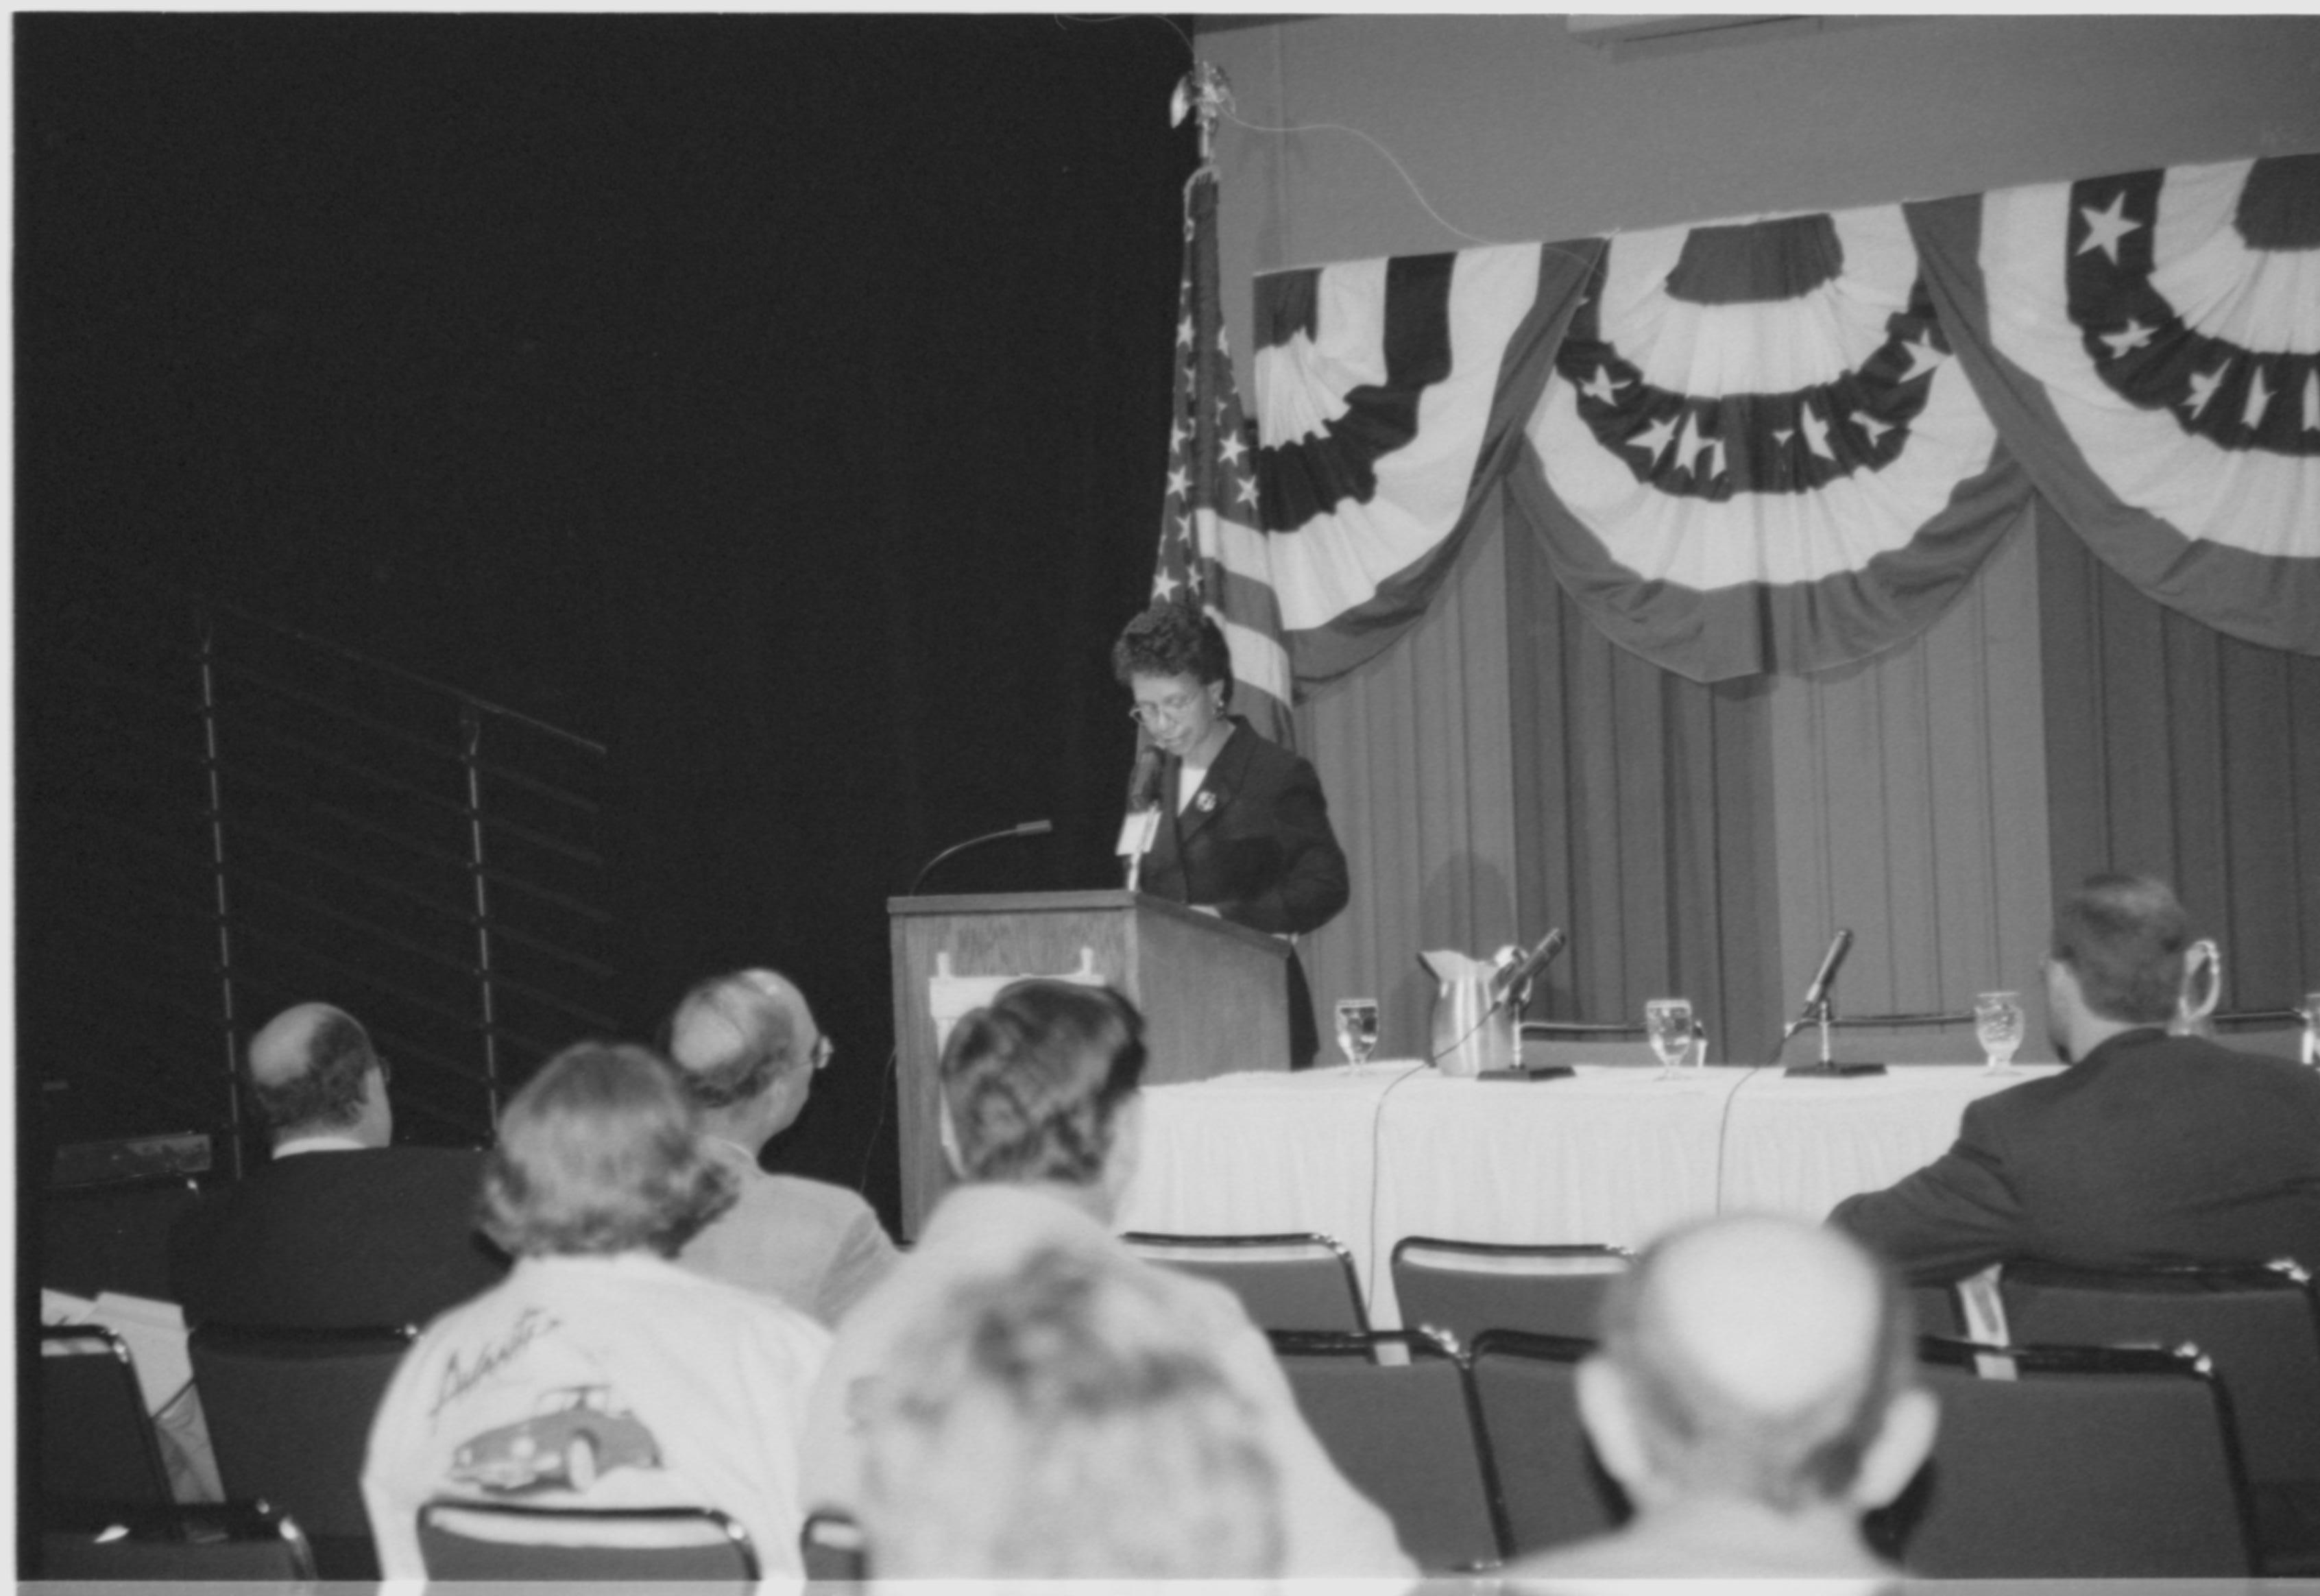 Lady speaking at podium, looking at notes. 1999-16; 32 Colloquium, 1999